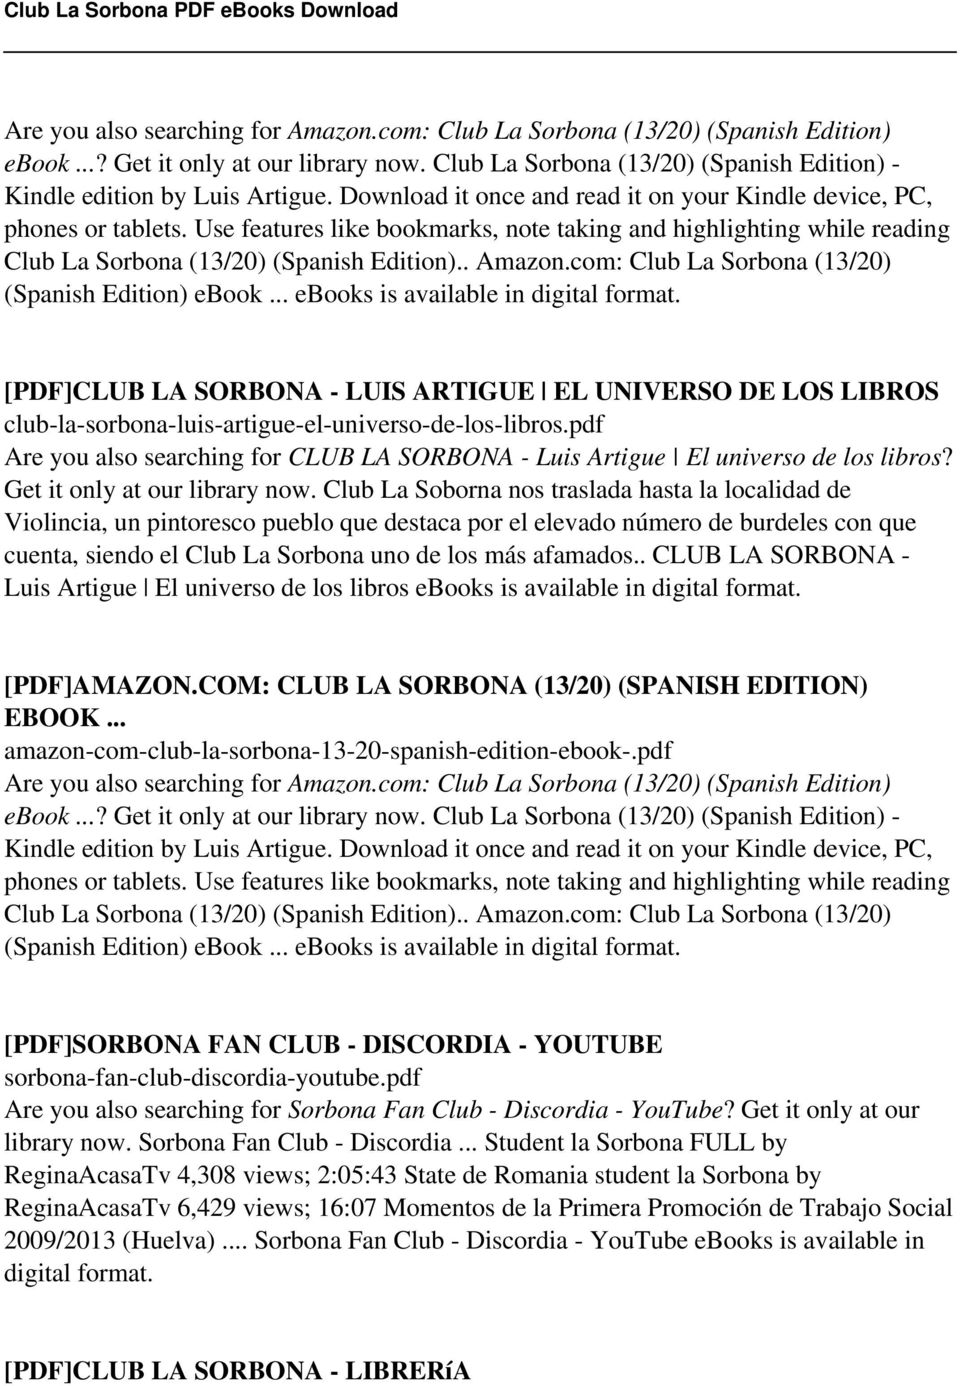 com: Club La Sorbona (13/20) (Spanish Edition) ebook... [PDF]CLUB LA SORBONA - LUIS ARTIGUE EL UNIVERSO DE LOS LIBROS club-la-sorbona-luis-artigue-el-universo-de-los-libros.